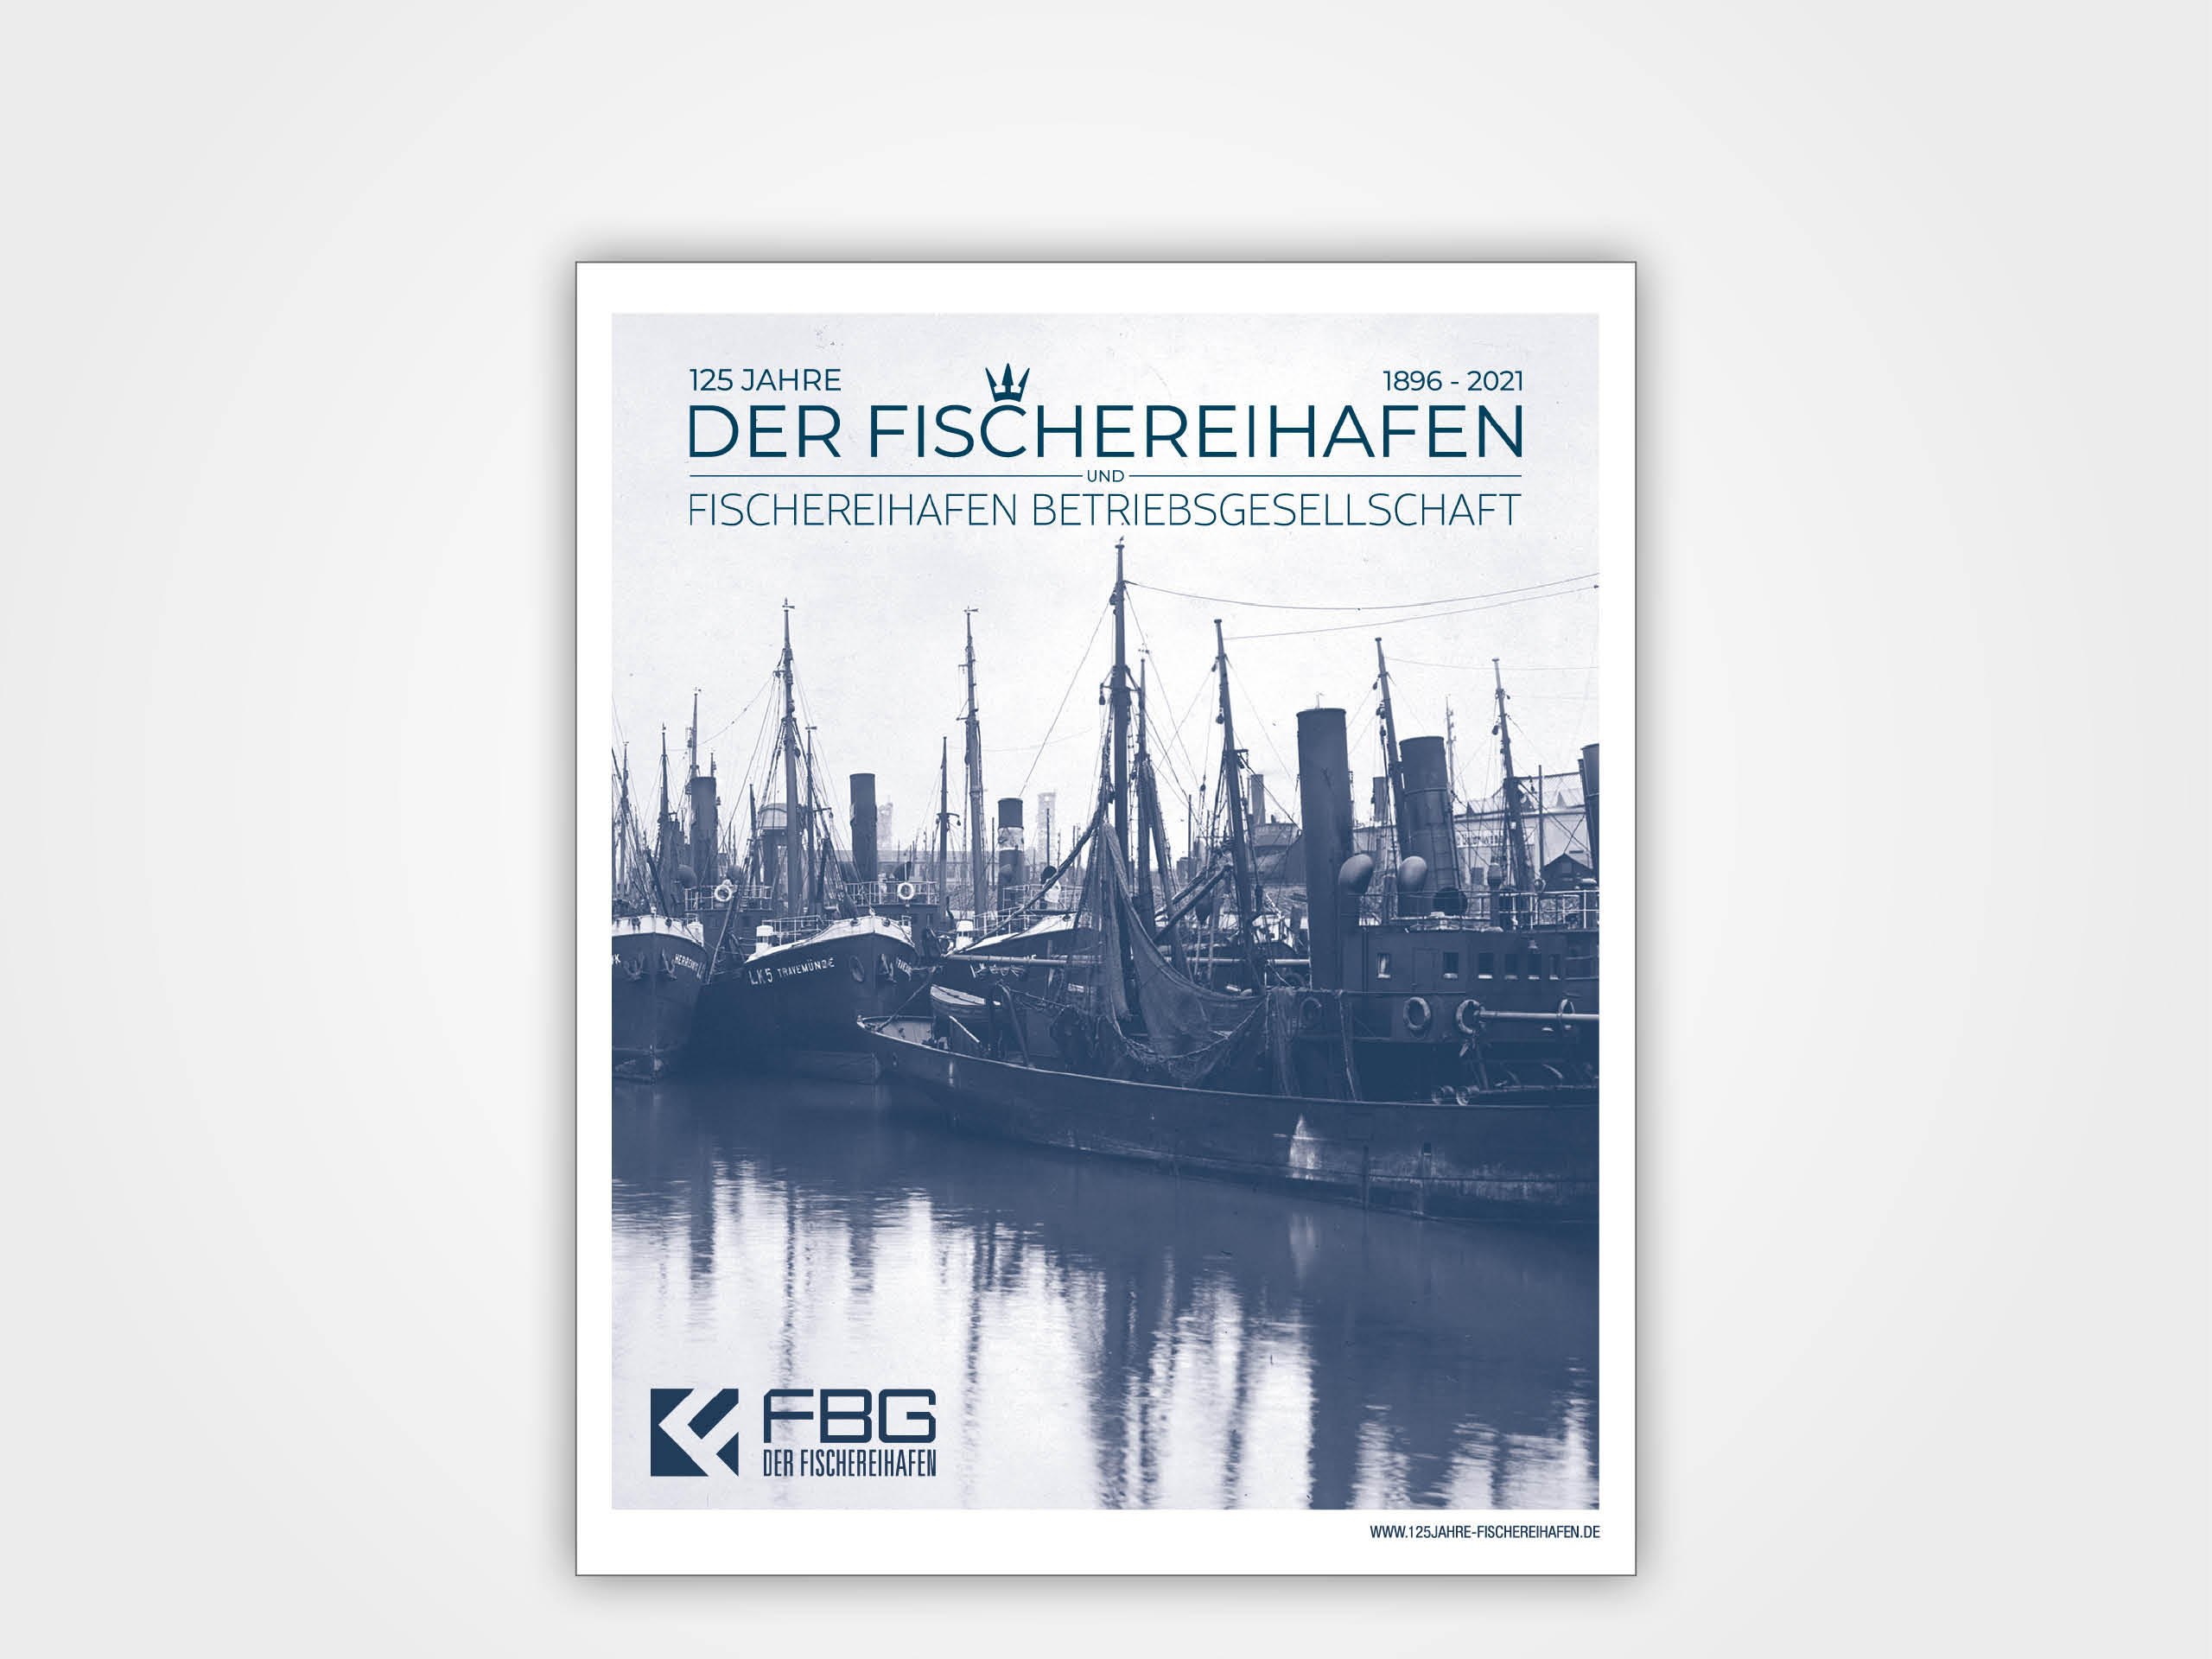 Der Fischereihafen Bremerhaven und FBG 1896-2021